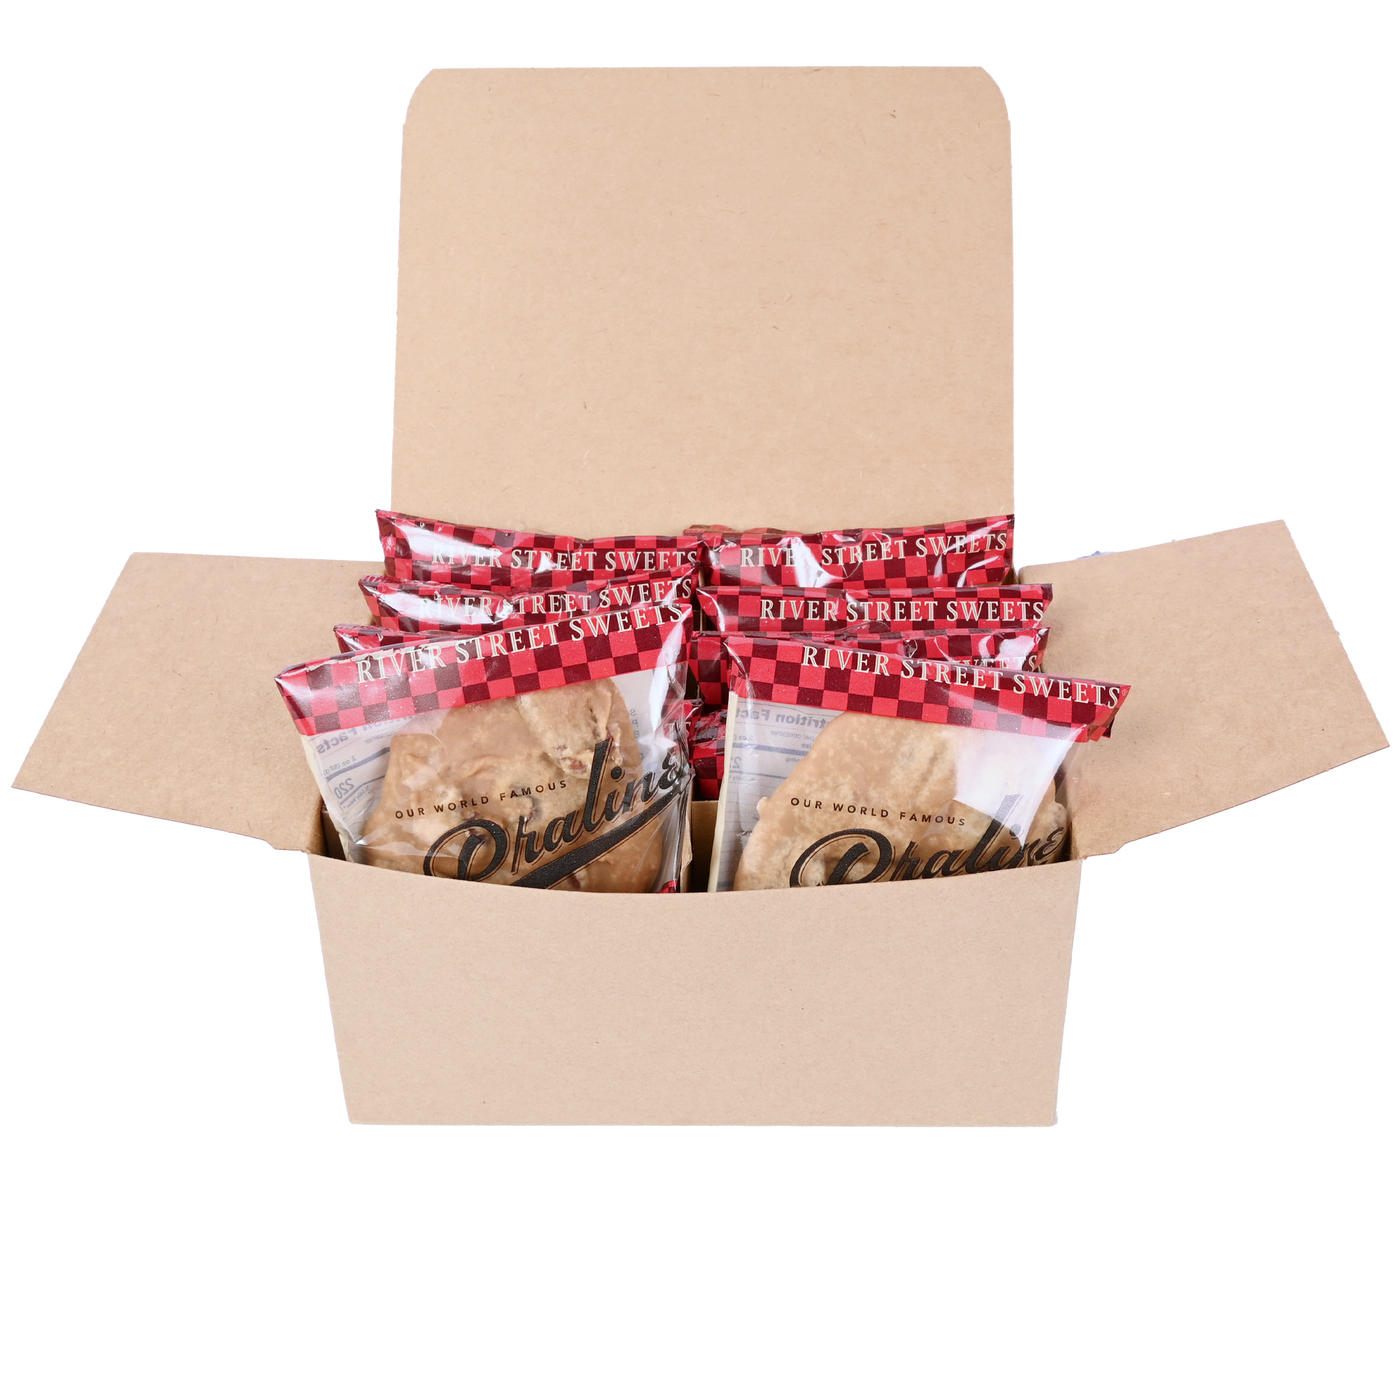 Custom Valentine's 10pc Classic Praline Gift Box